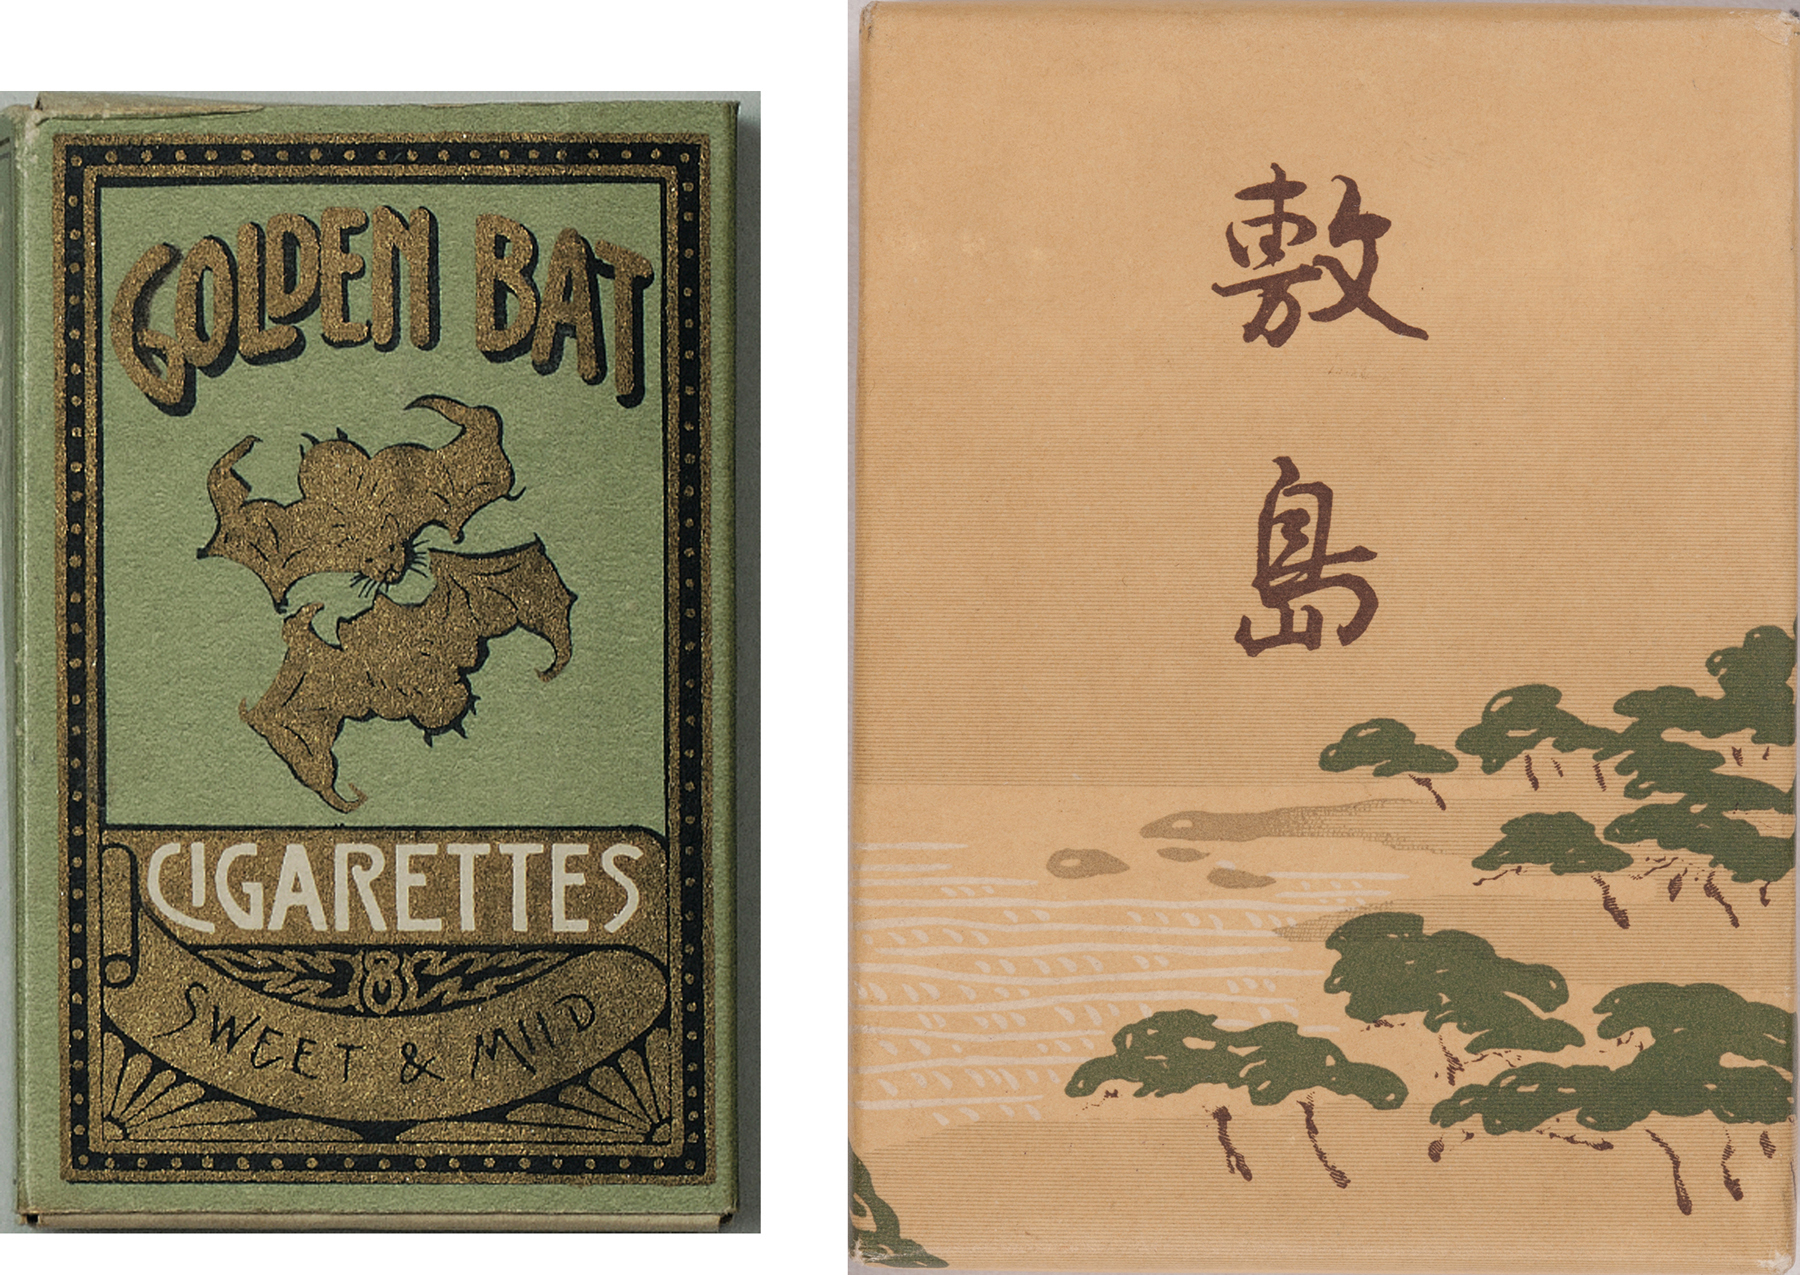 龍之介が愛喫した「ゴールデンバット」（両切紙巻たばこ）と「敷島」（口付紙巻たばこ）たばこと塩の博物館蔵
											